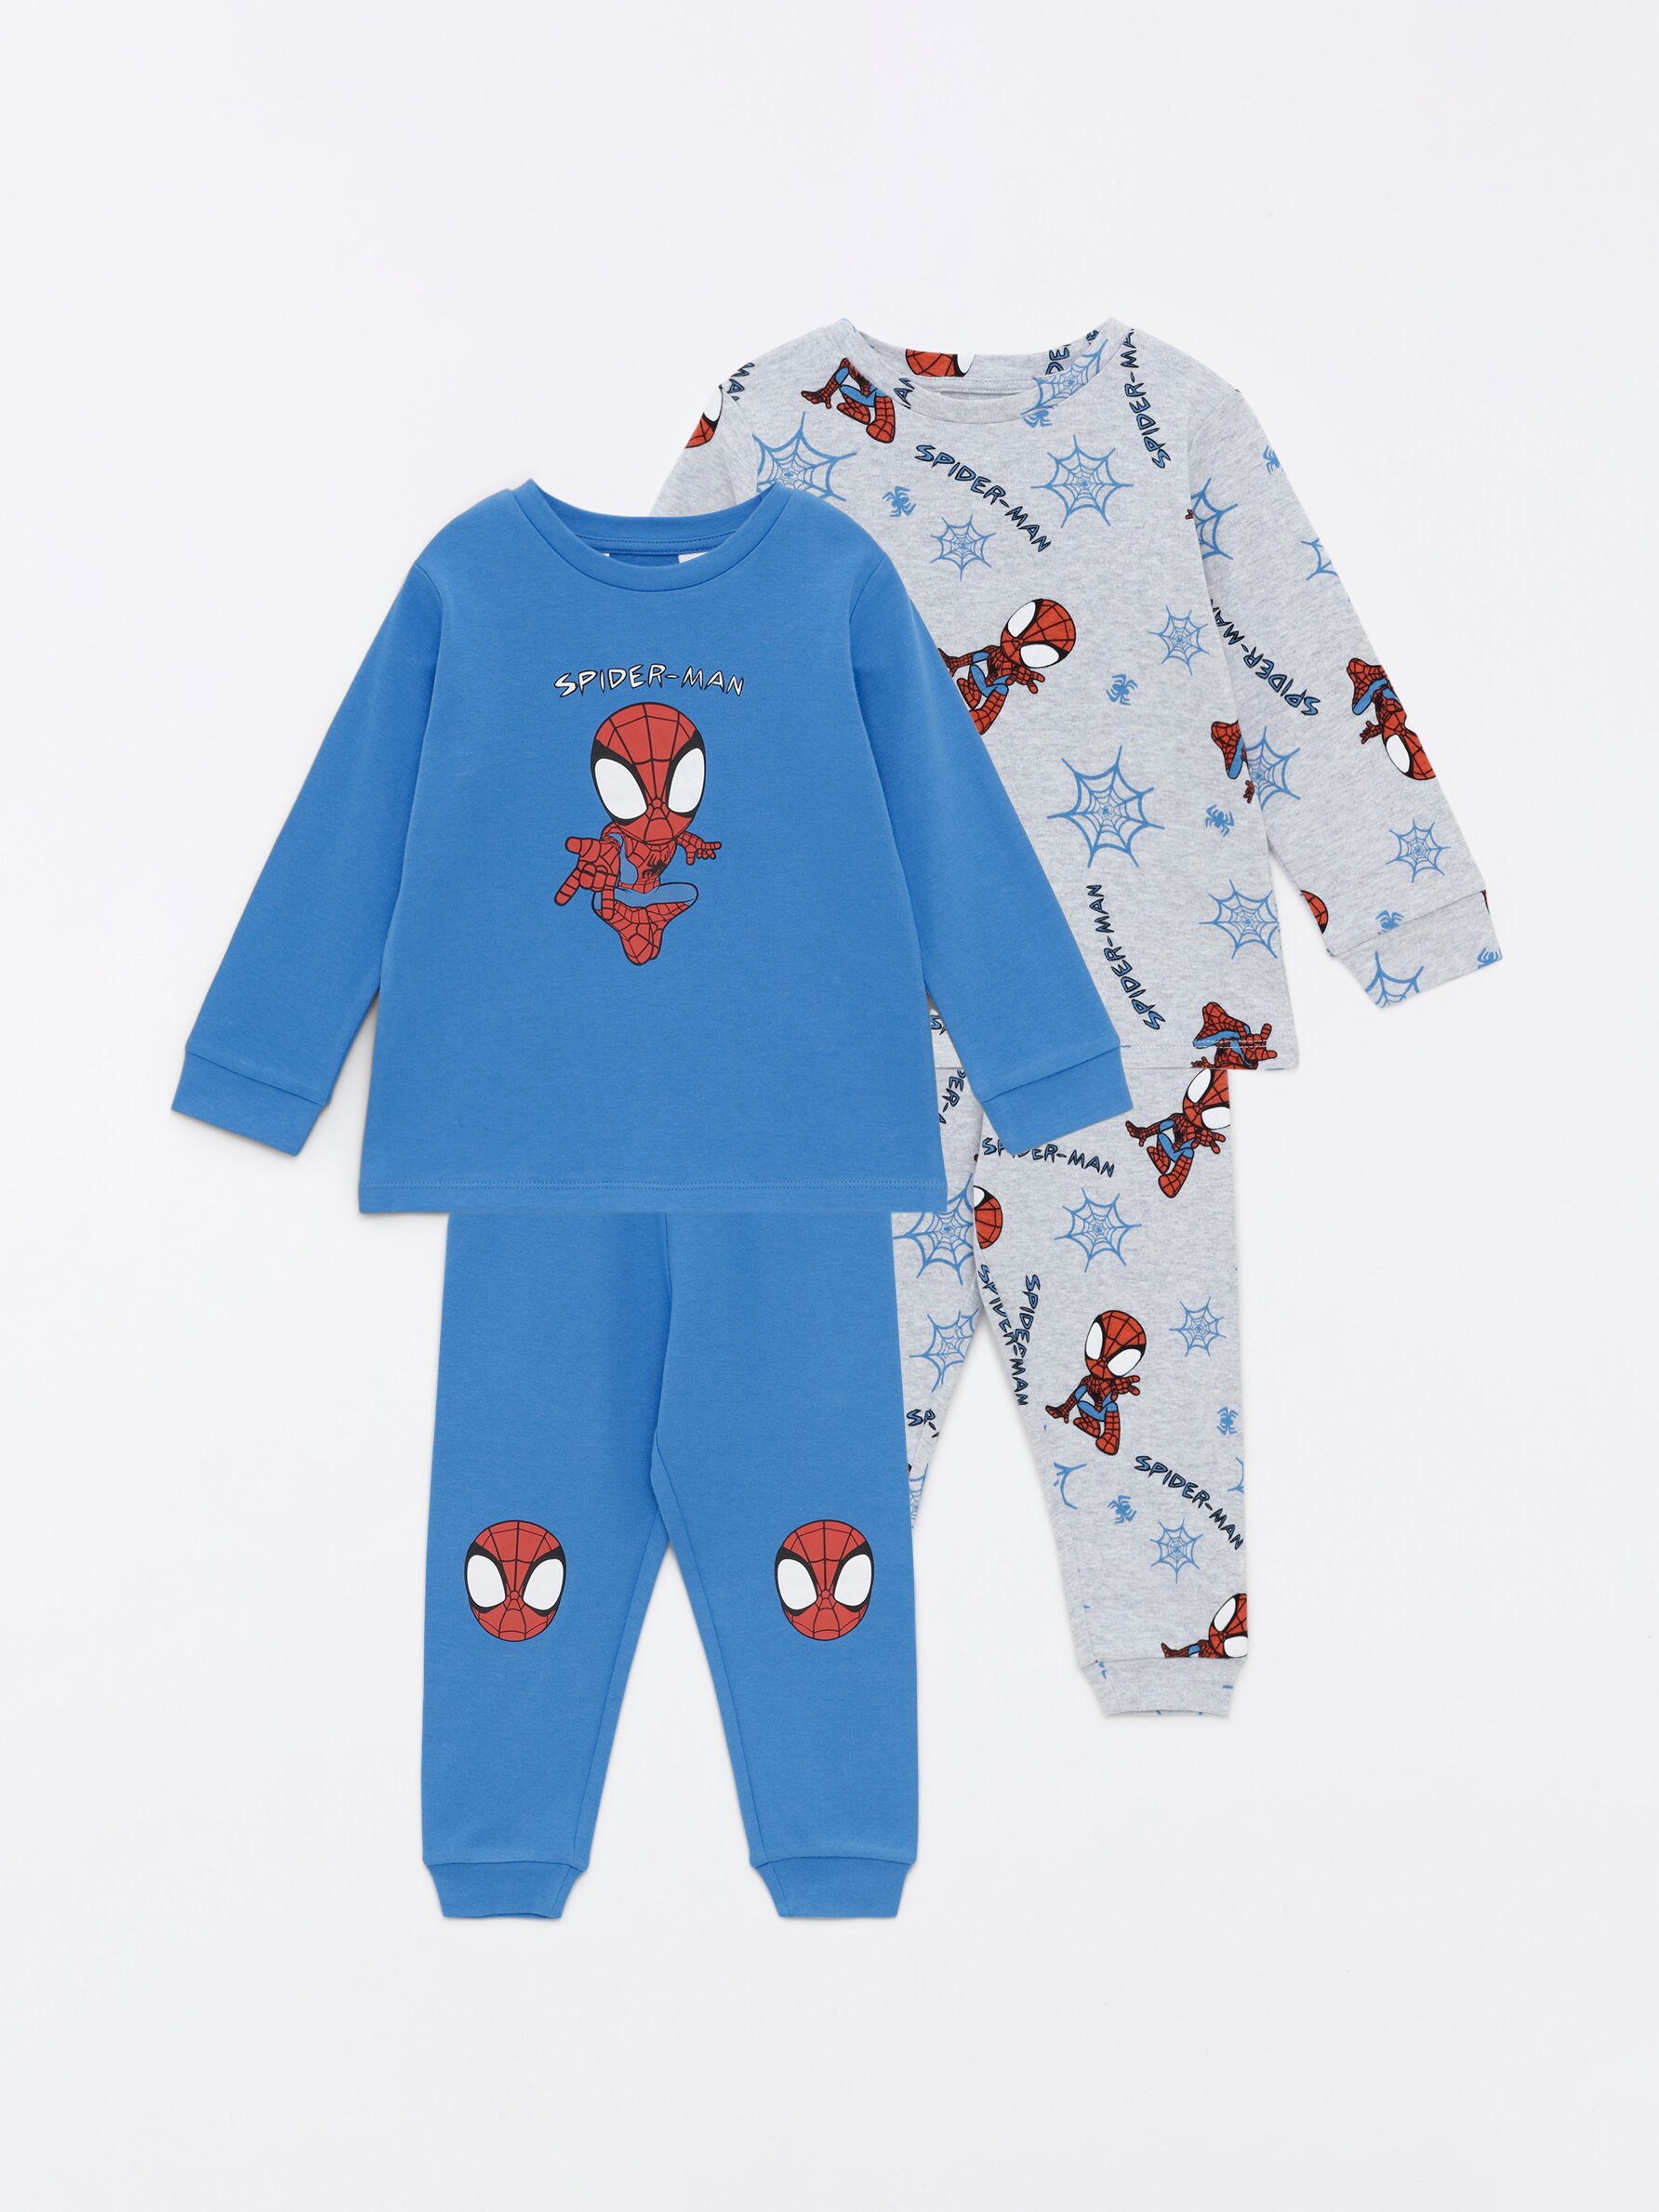 Pijama Spiderman - Modelo Araña